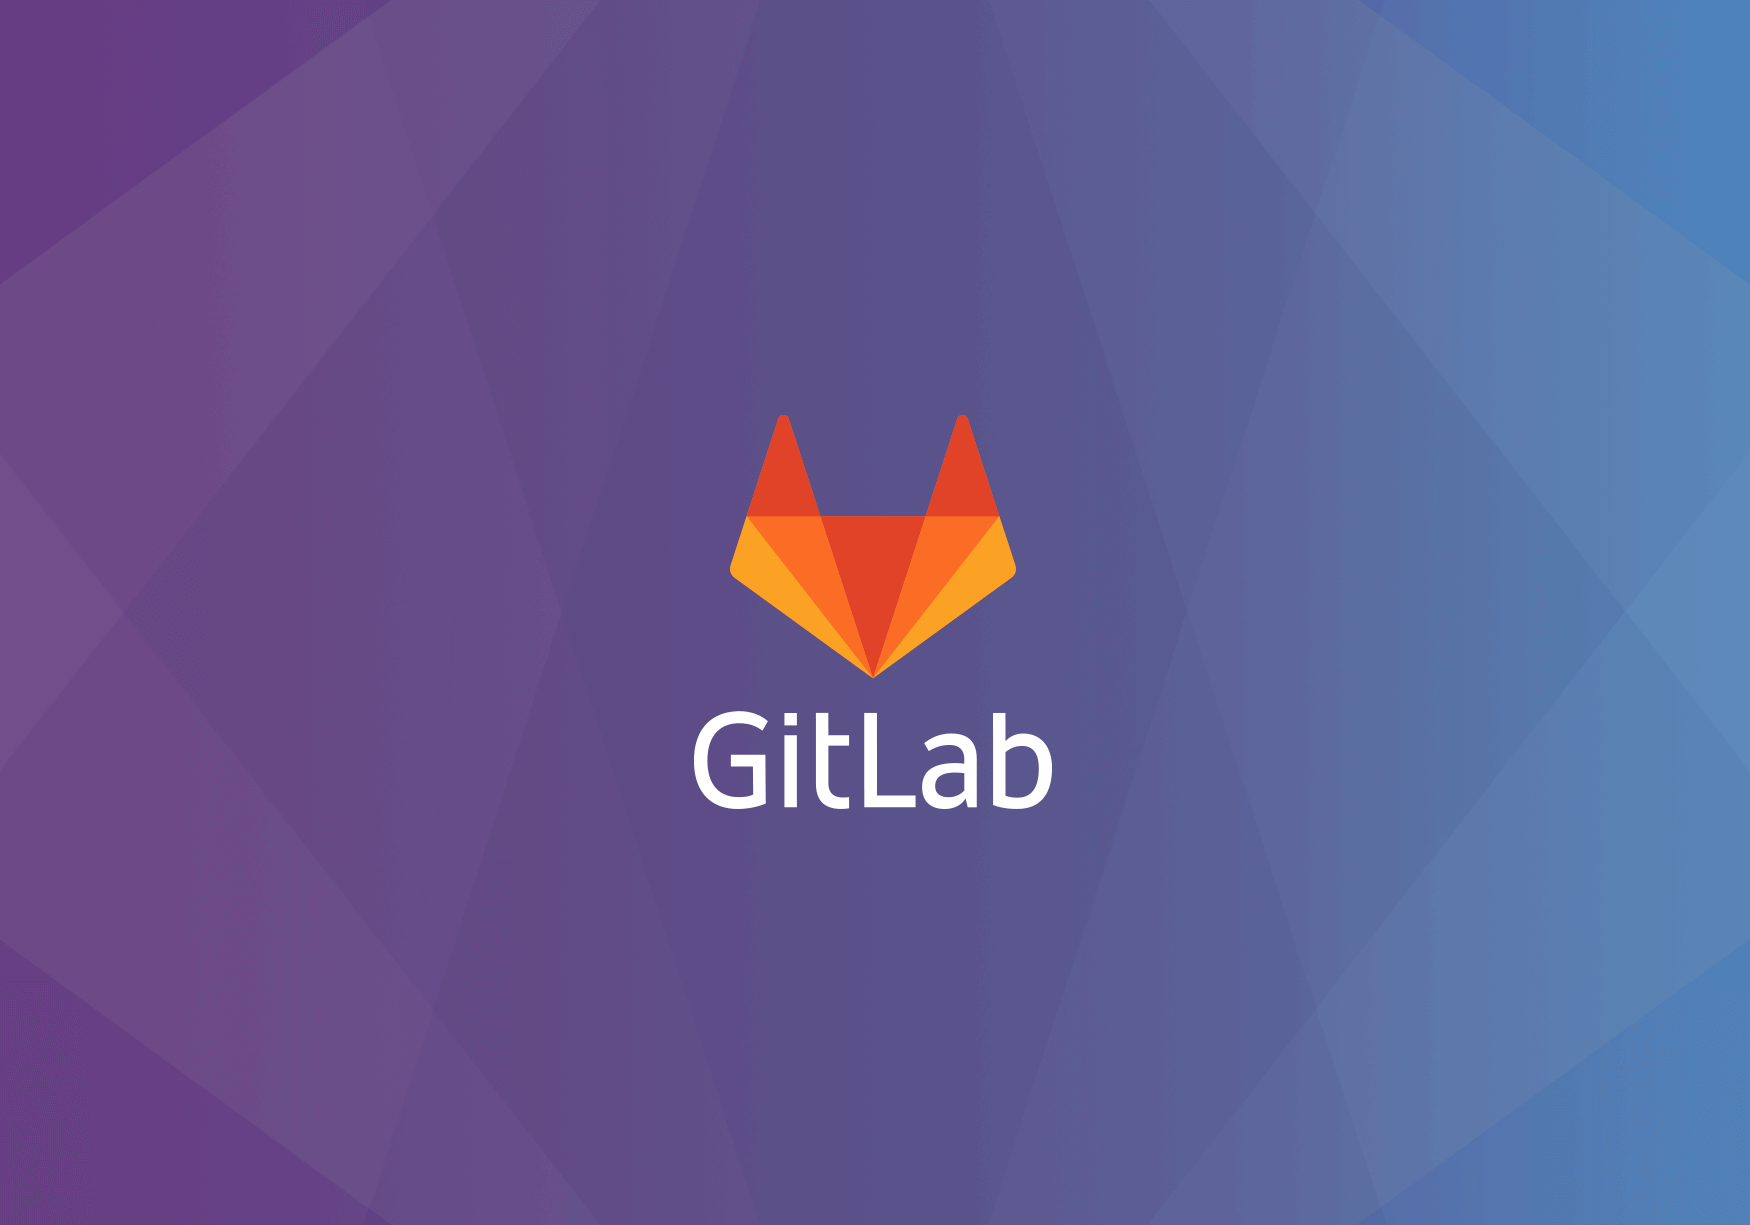 Критический баг в GitLab позволяет захватывать чужие аккаунты